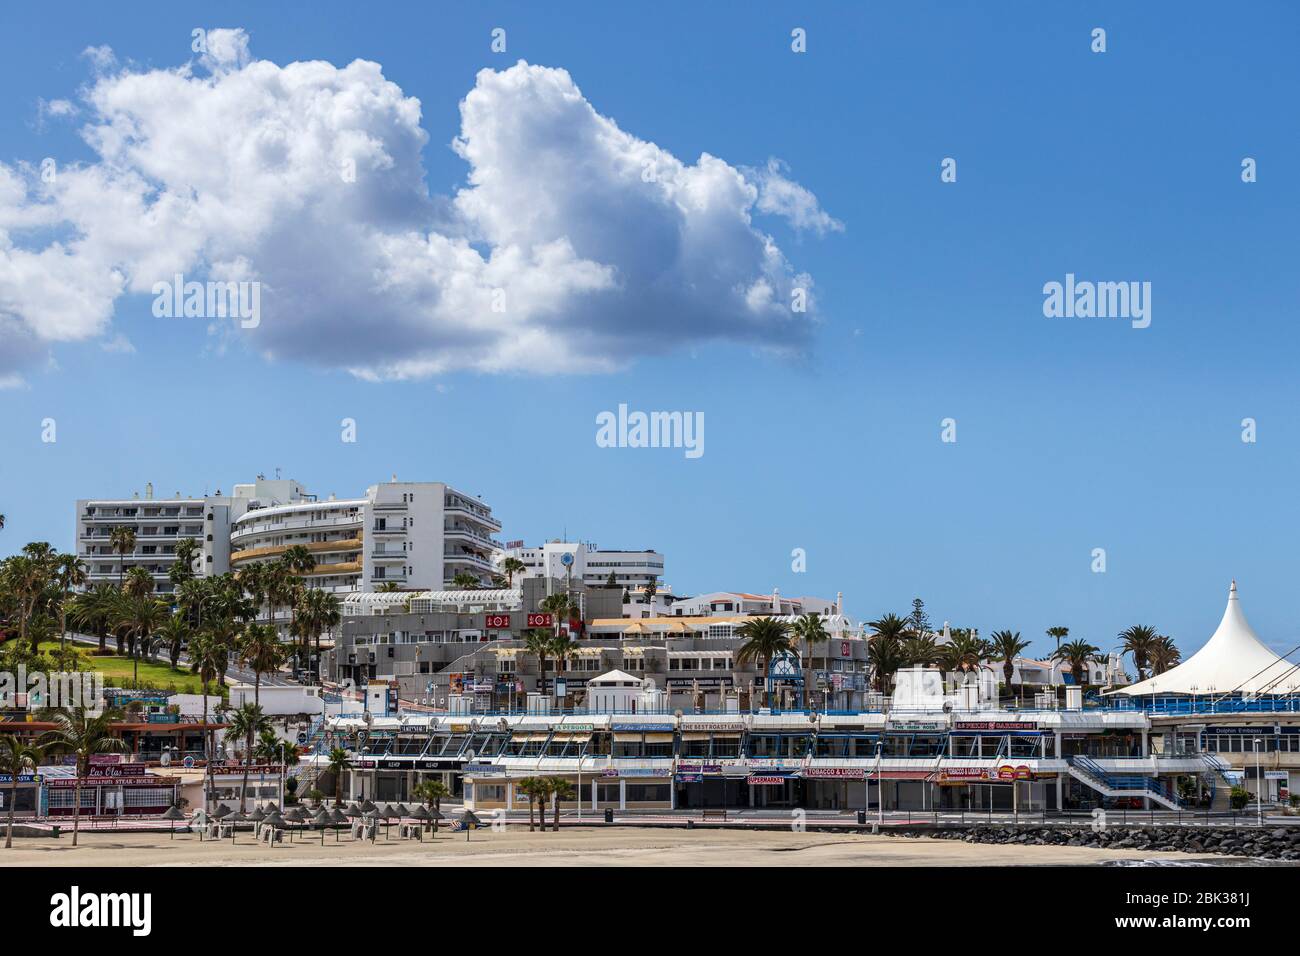 Playas vacías en las zonas turísticas de Costa Adeje, Tenerife, Islas Canarias, España Foto de stock